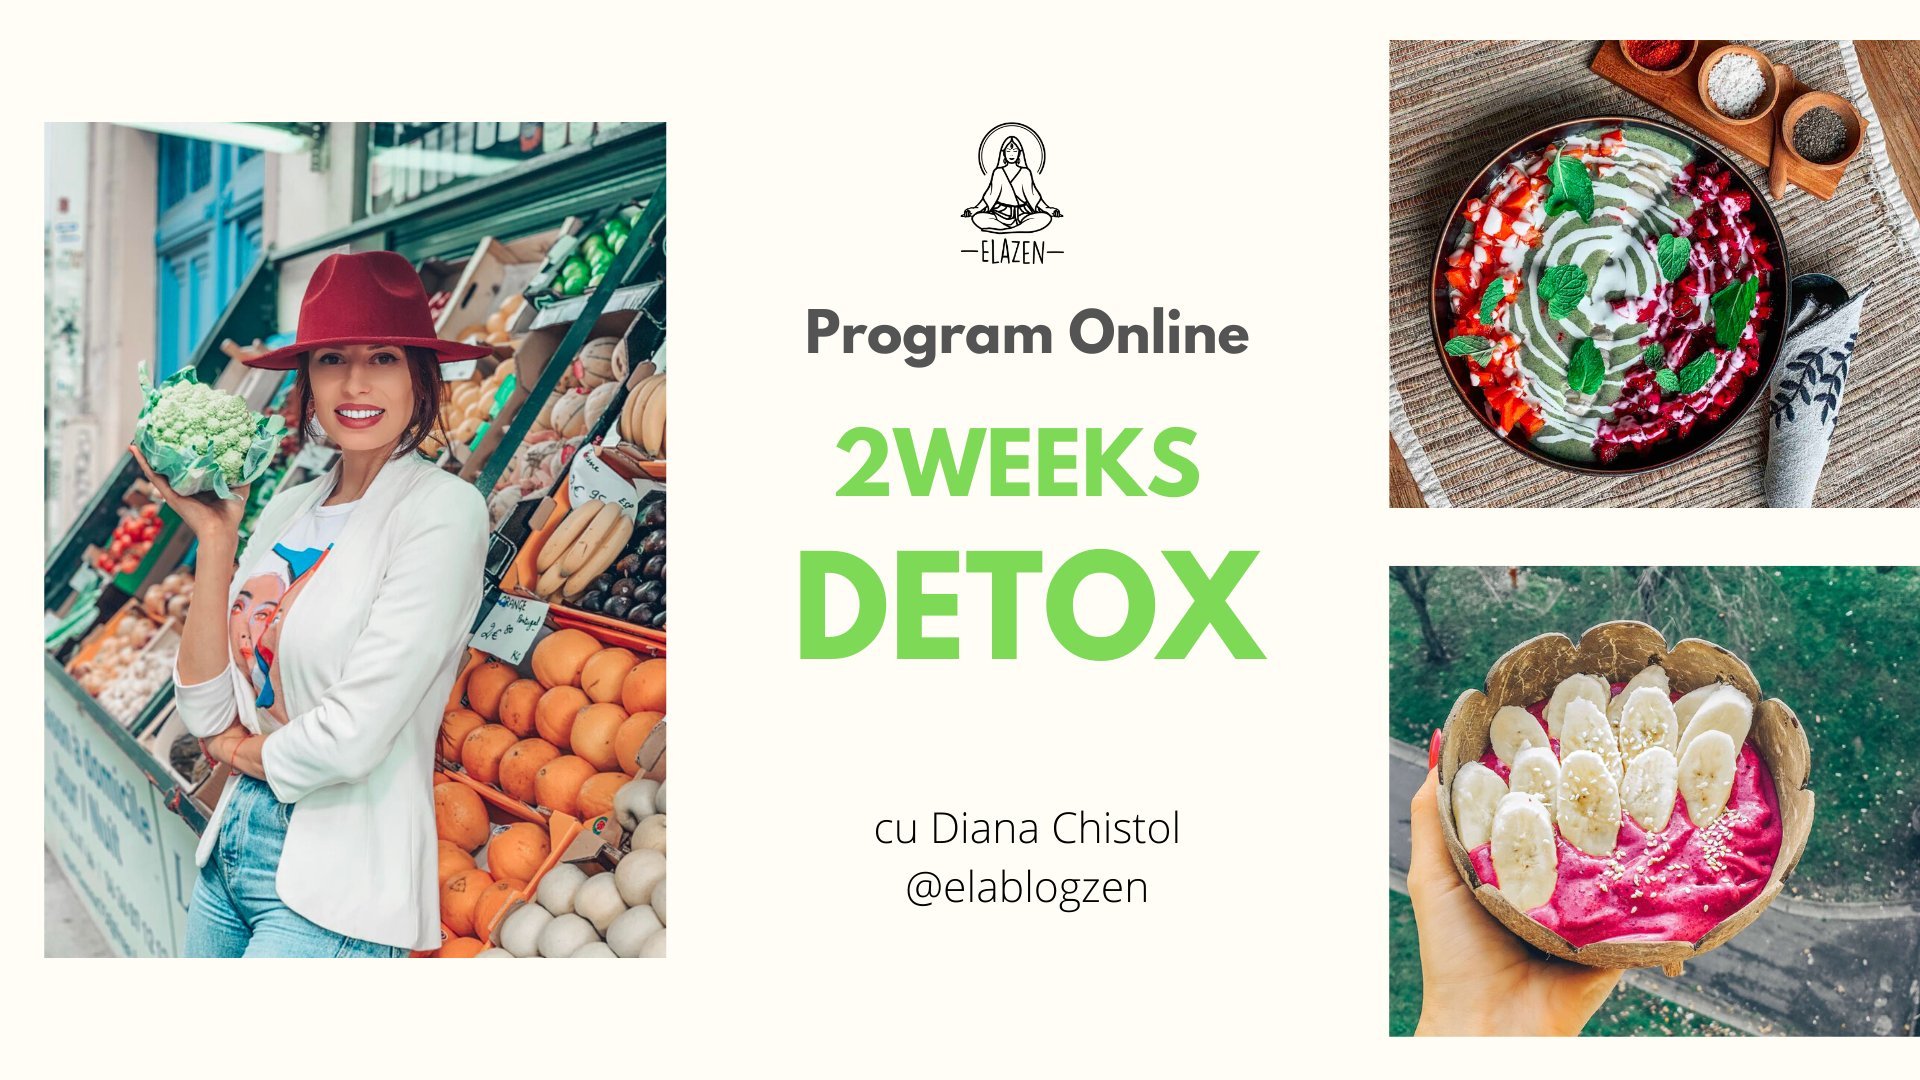 Detox1 cu Diana Chistol - Program Online de Detox | Editia 8